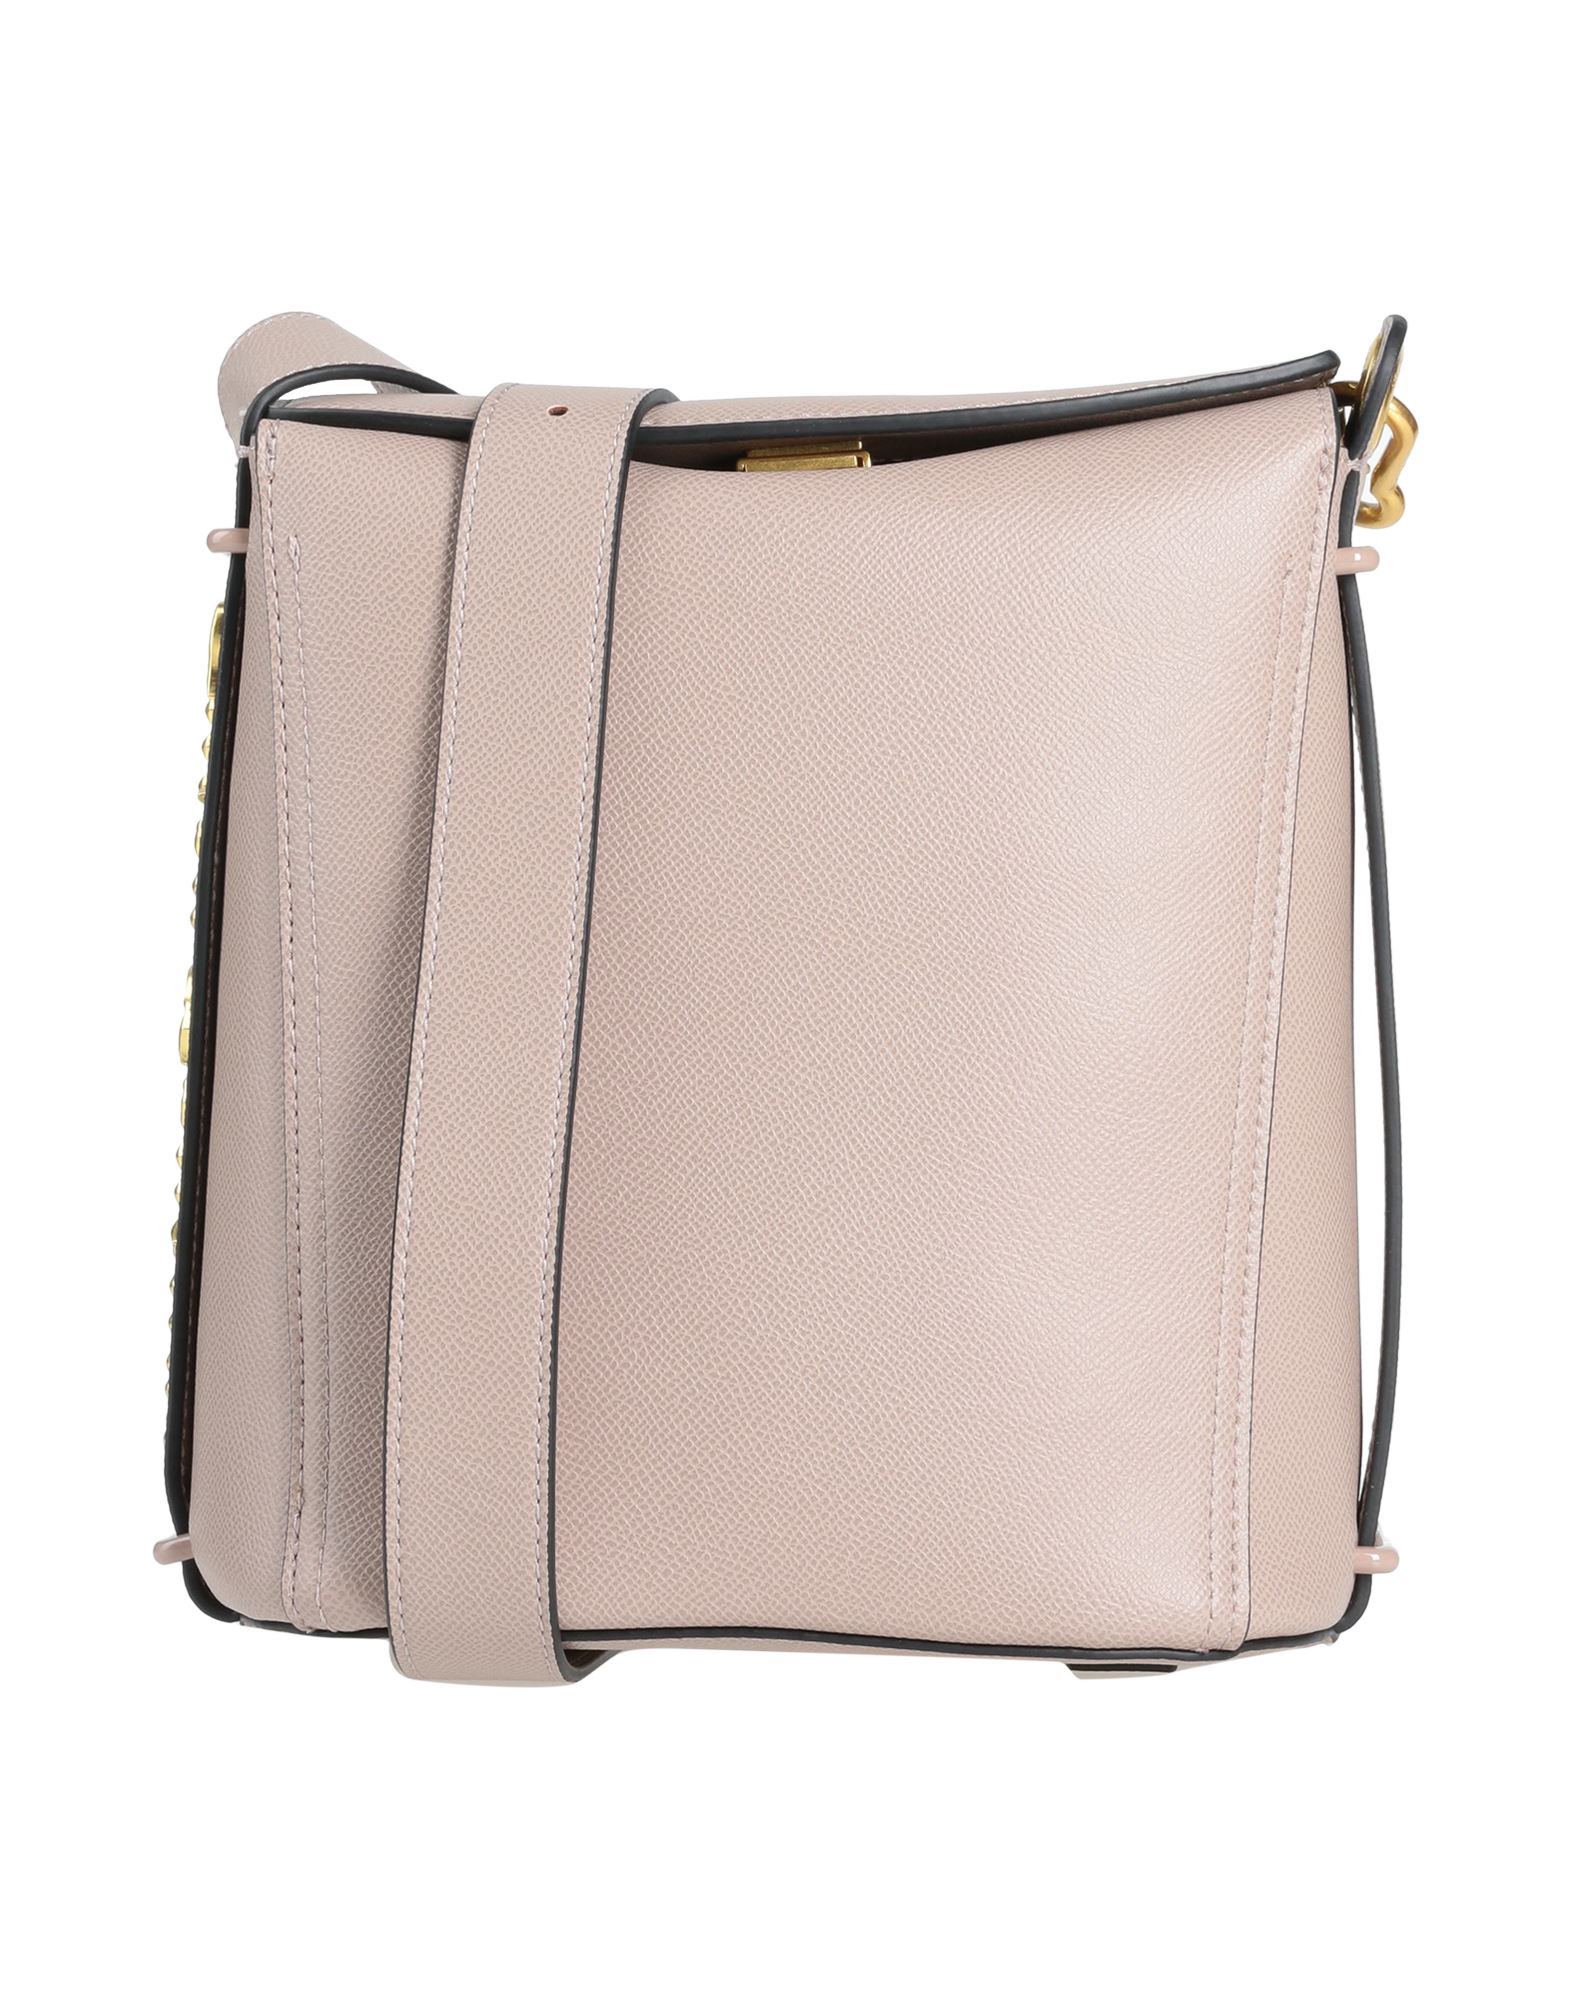 Juicy Couture Handbags In Dove Grey